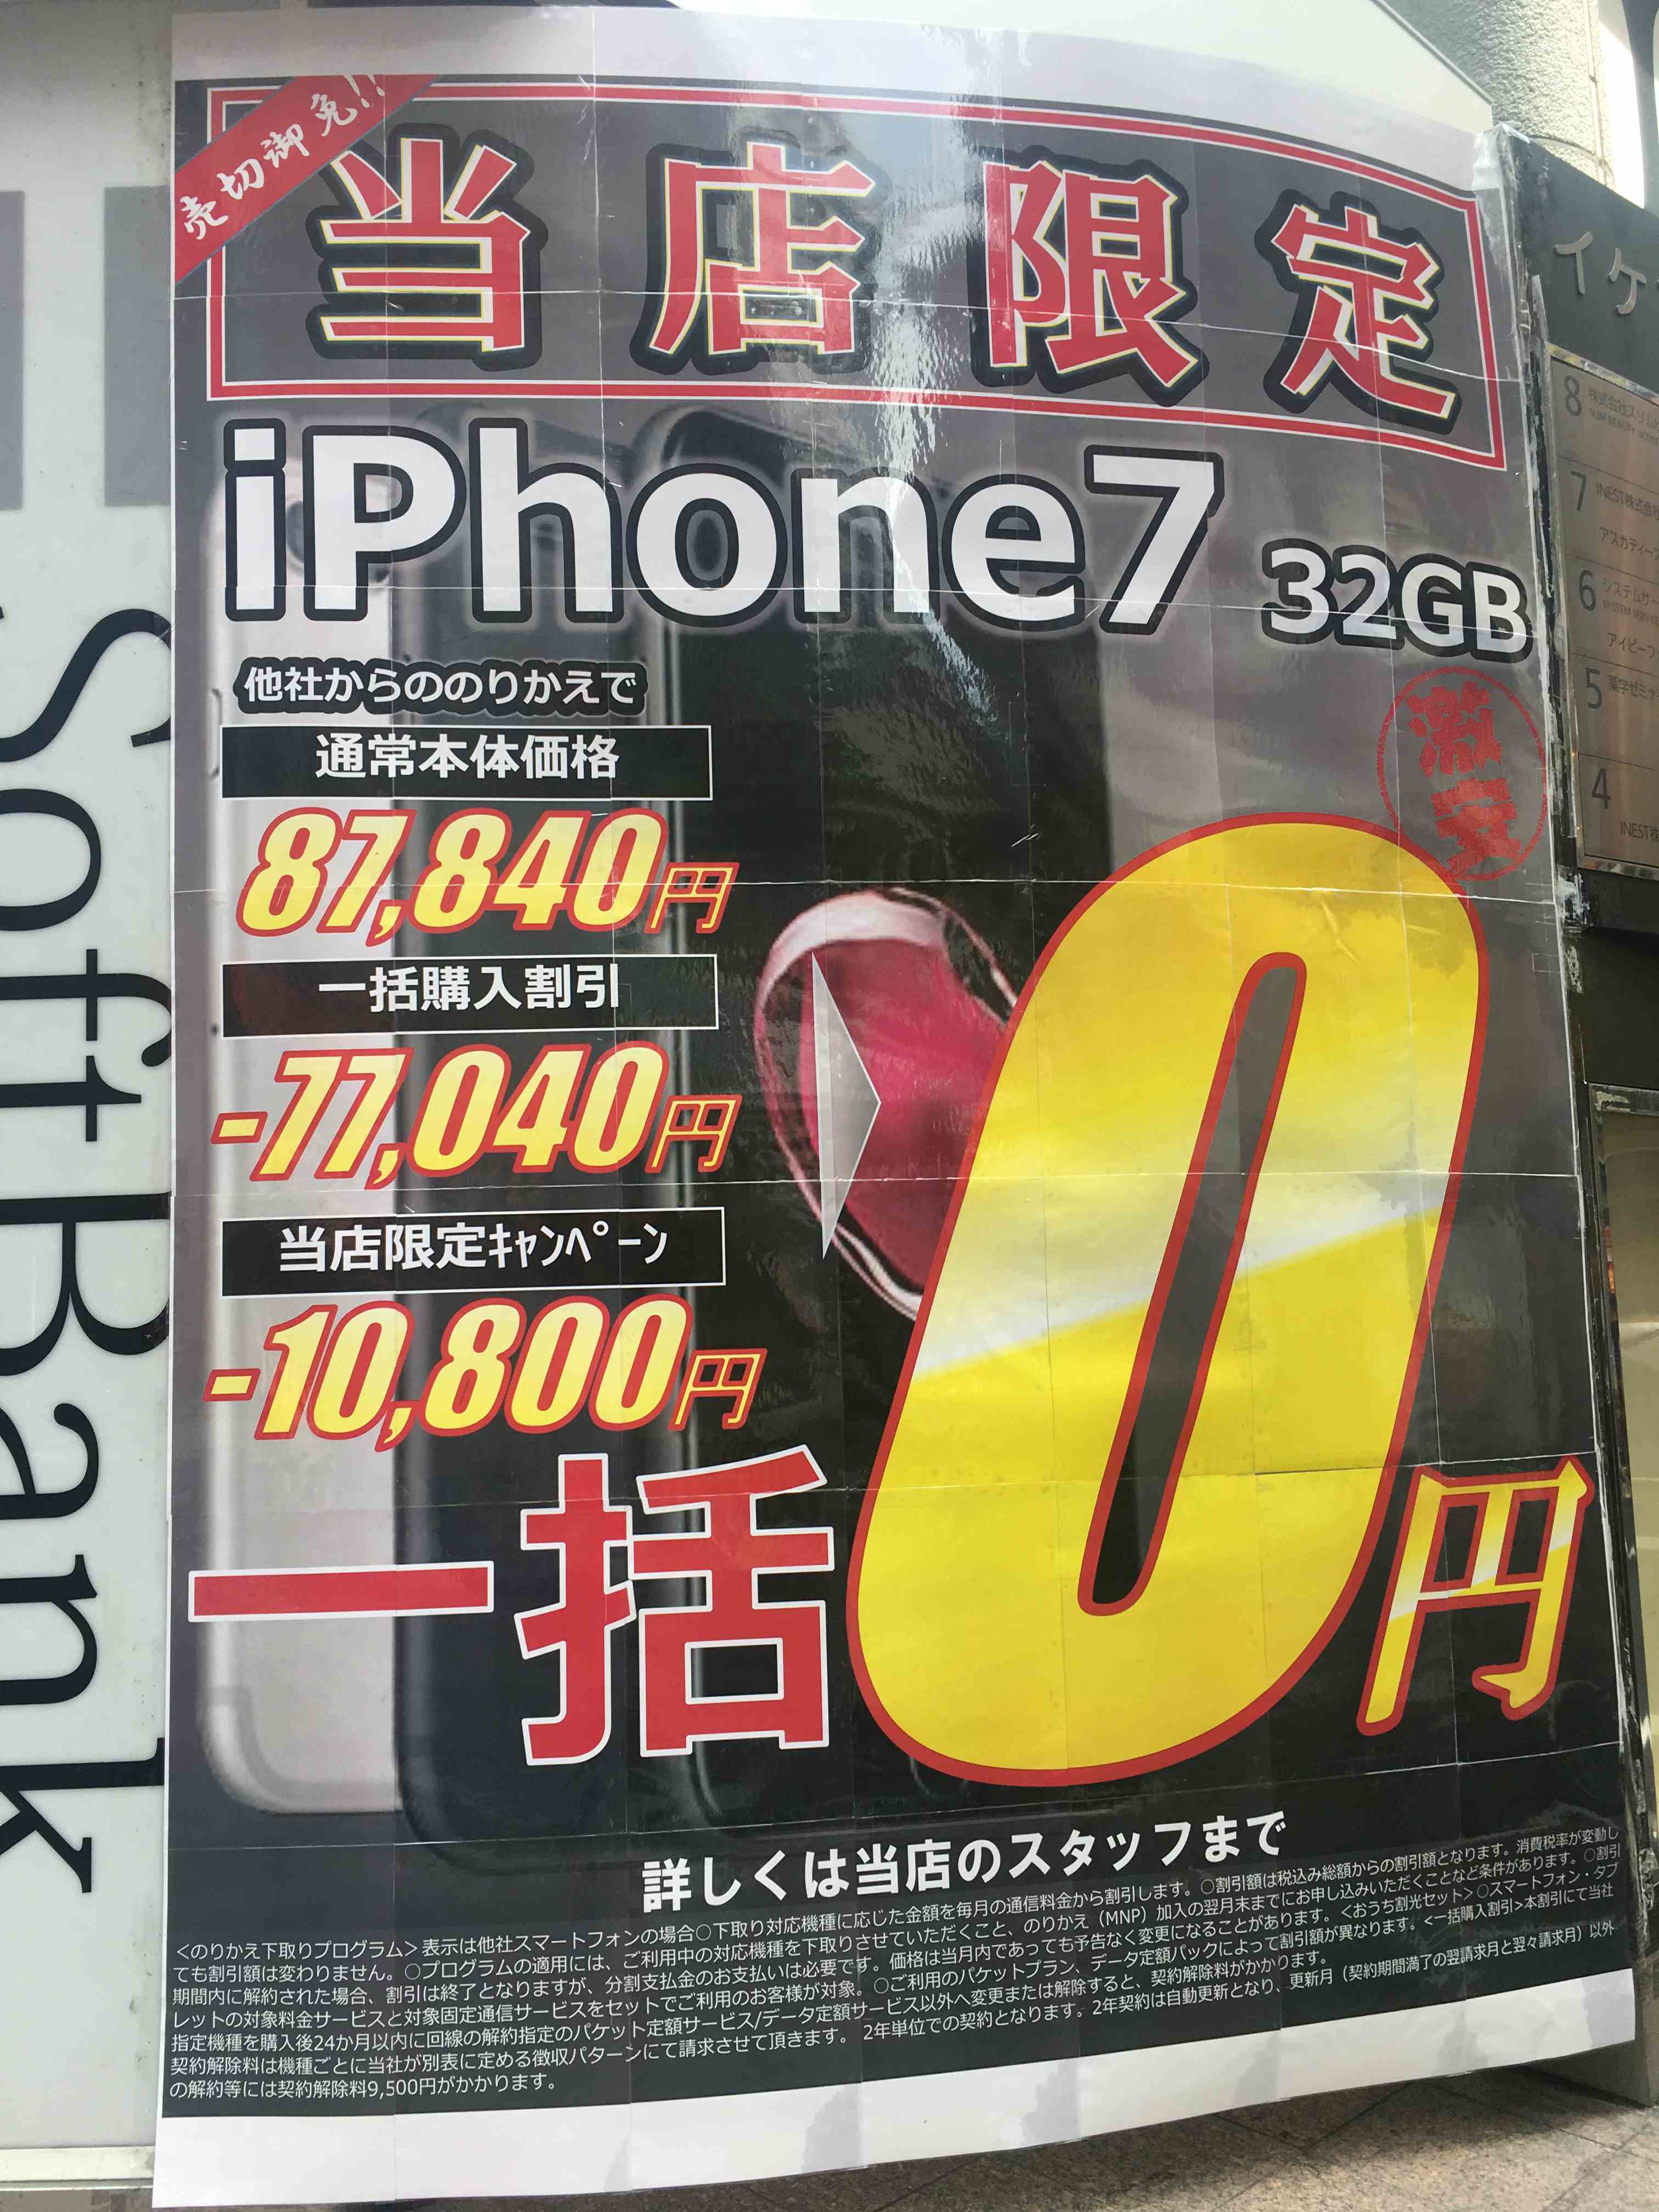 キャリアショップでiPhone7が一括0円など大幅値下げ決行中